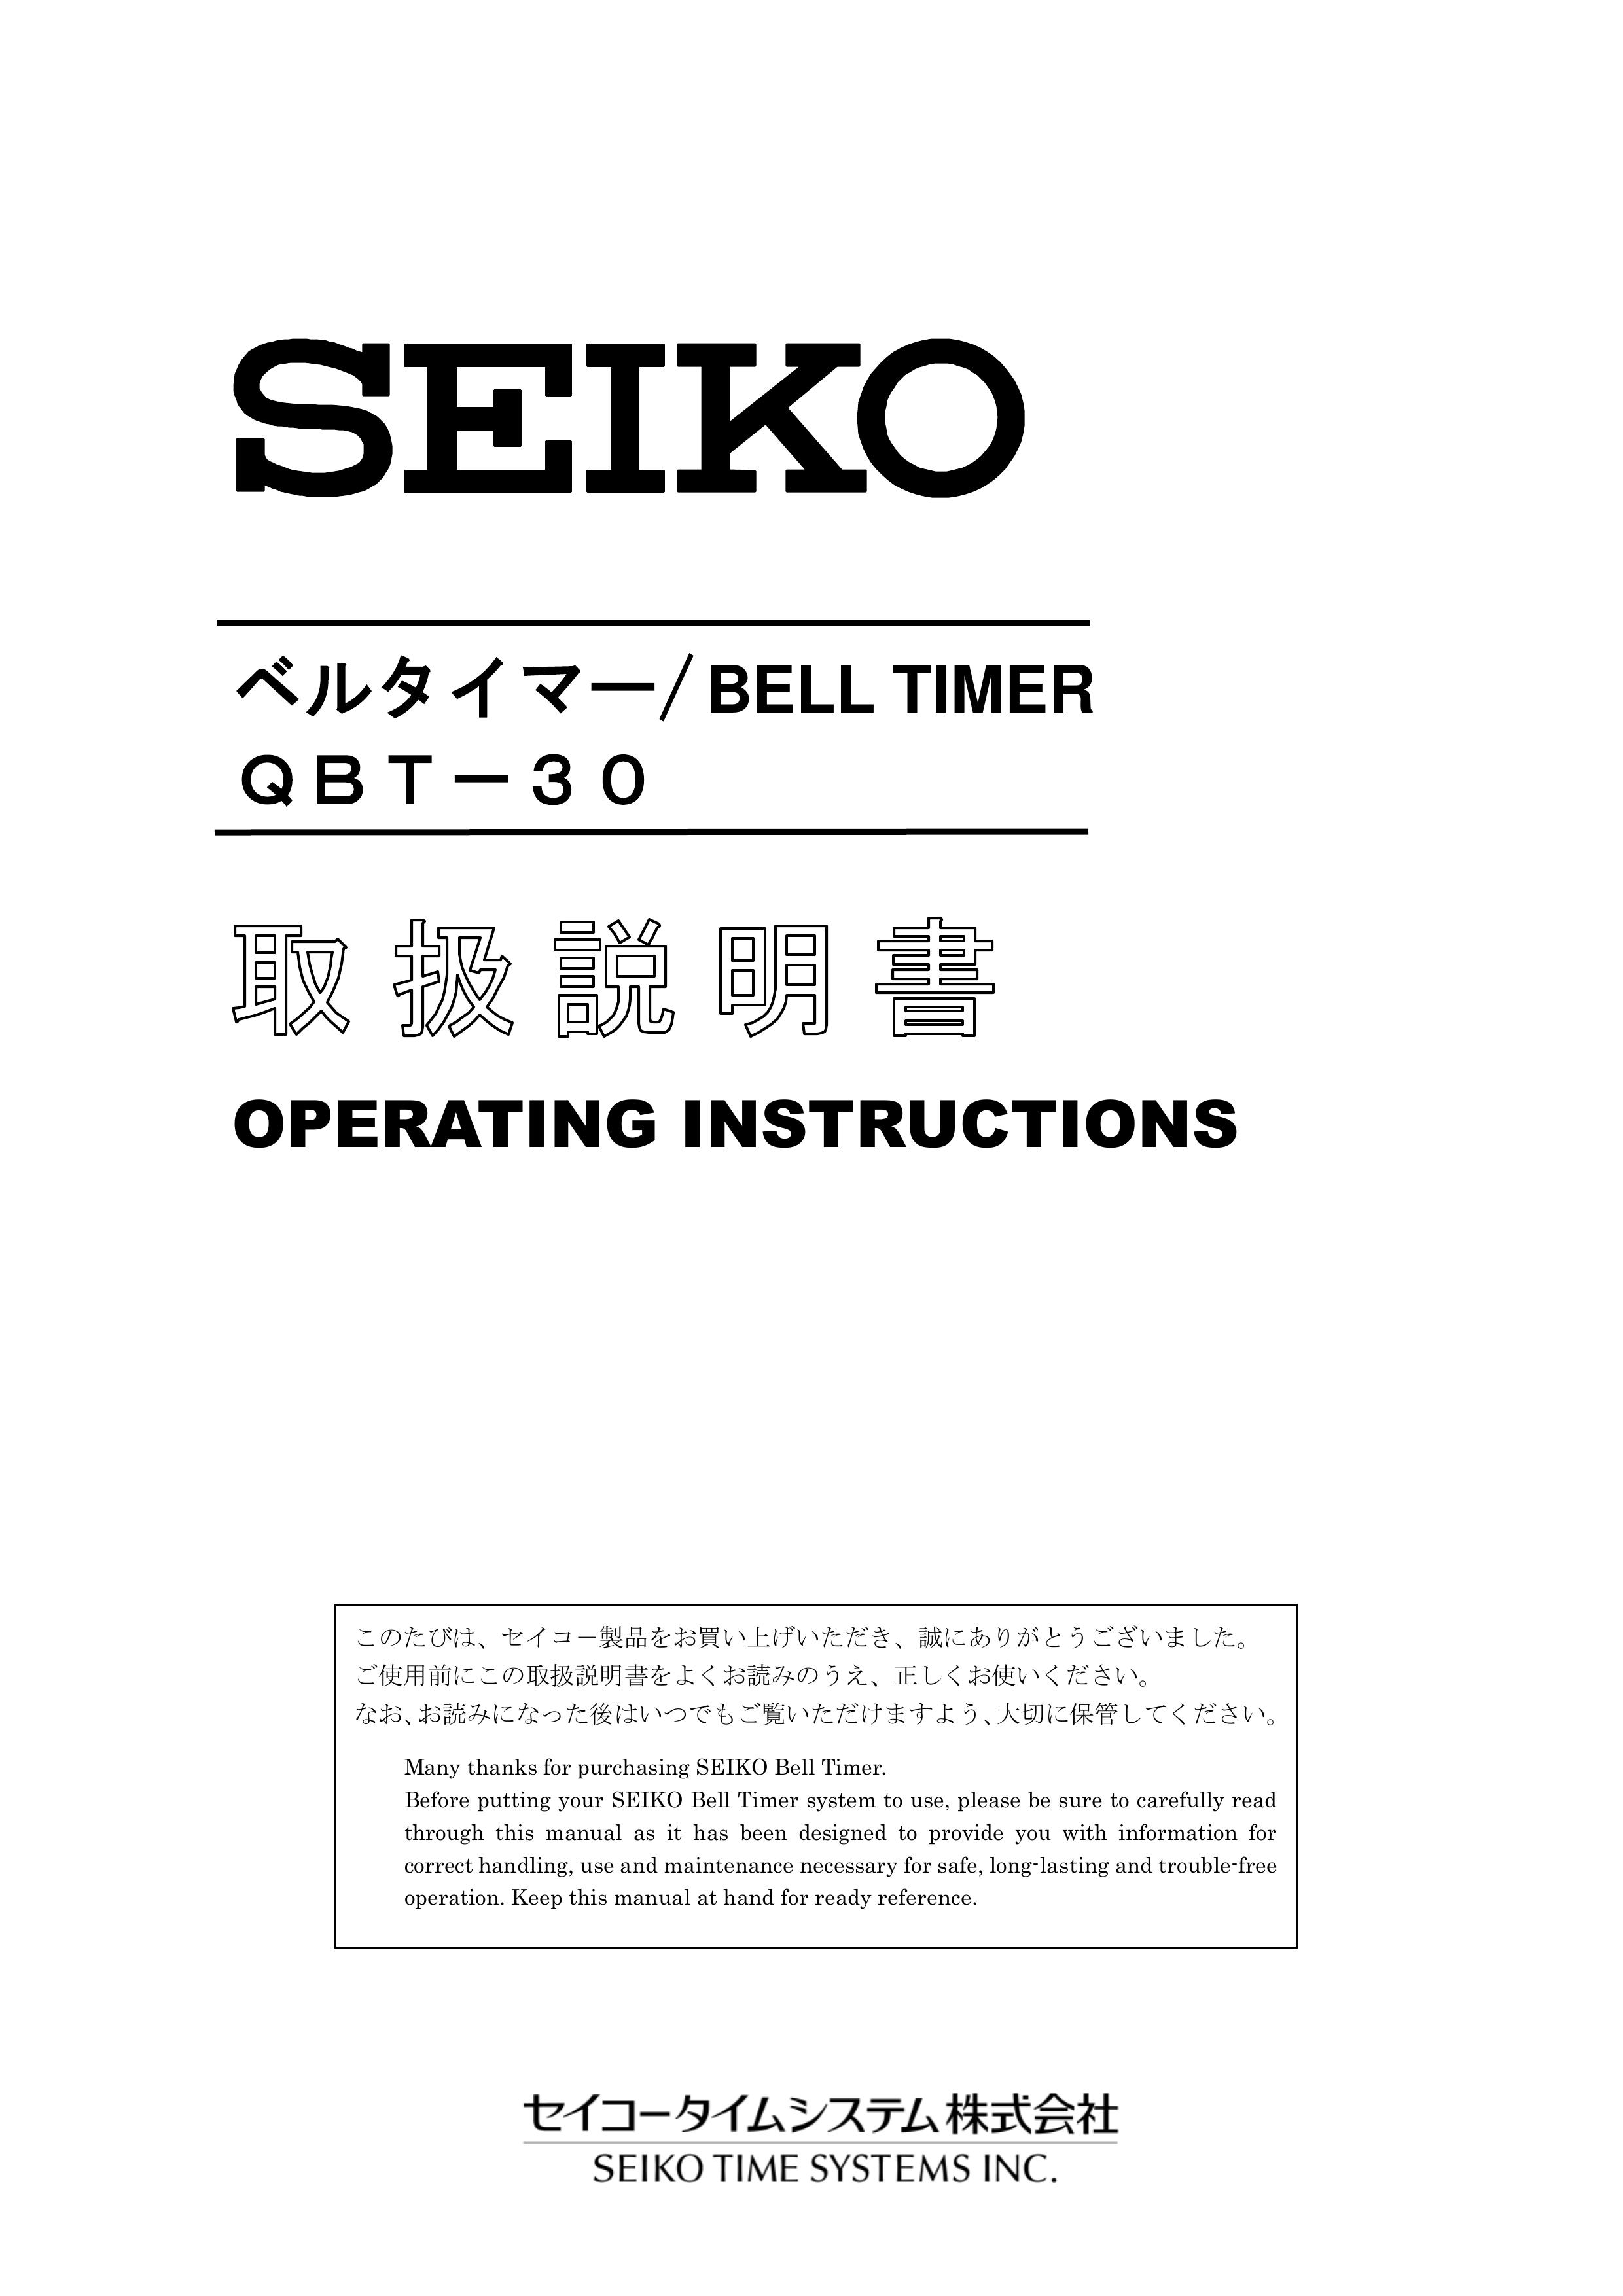 Seiko Group QBT-30 Outdoor Timer User Manual